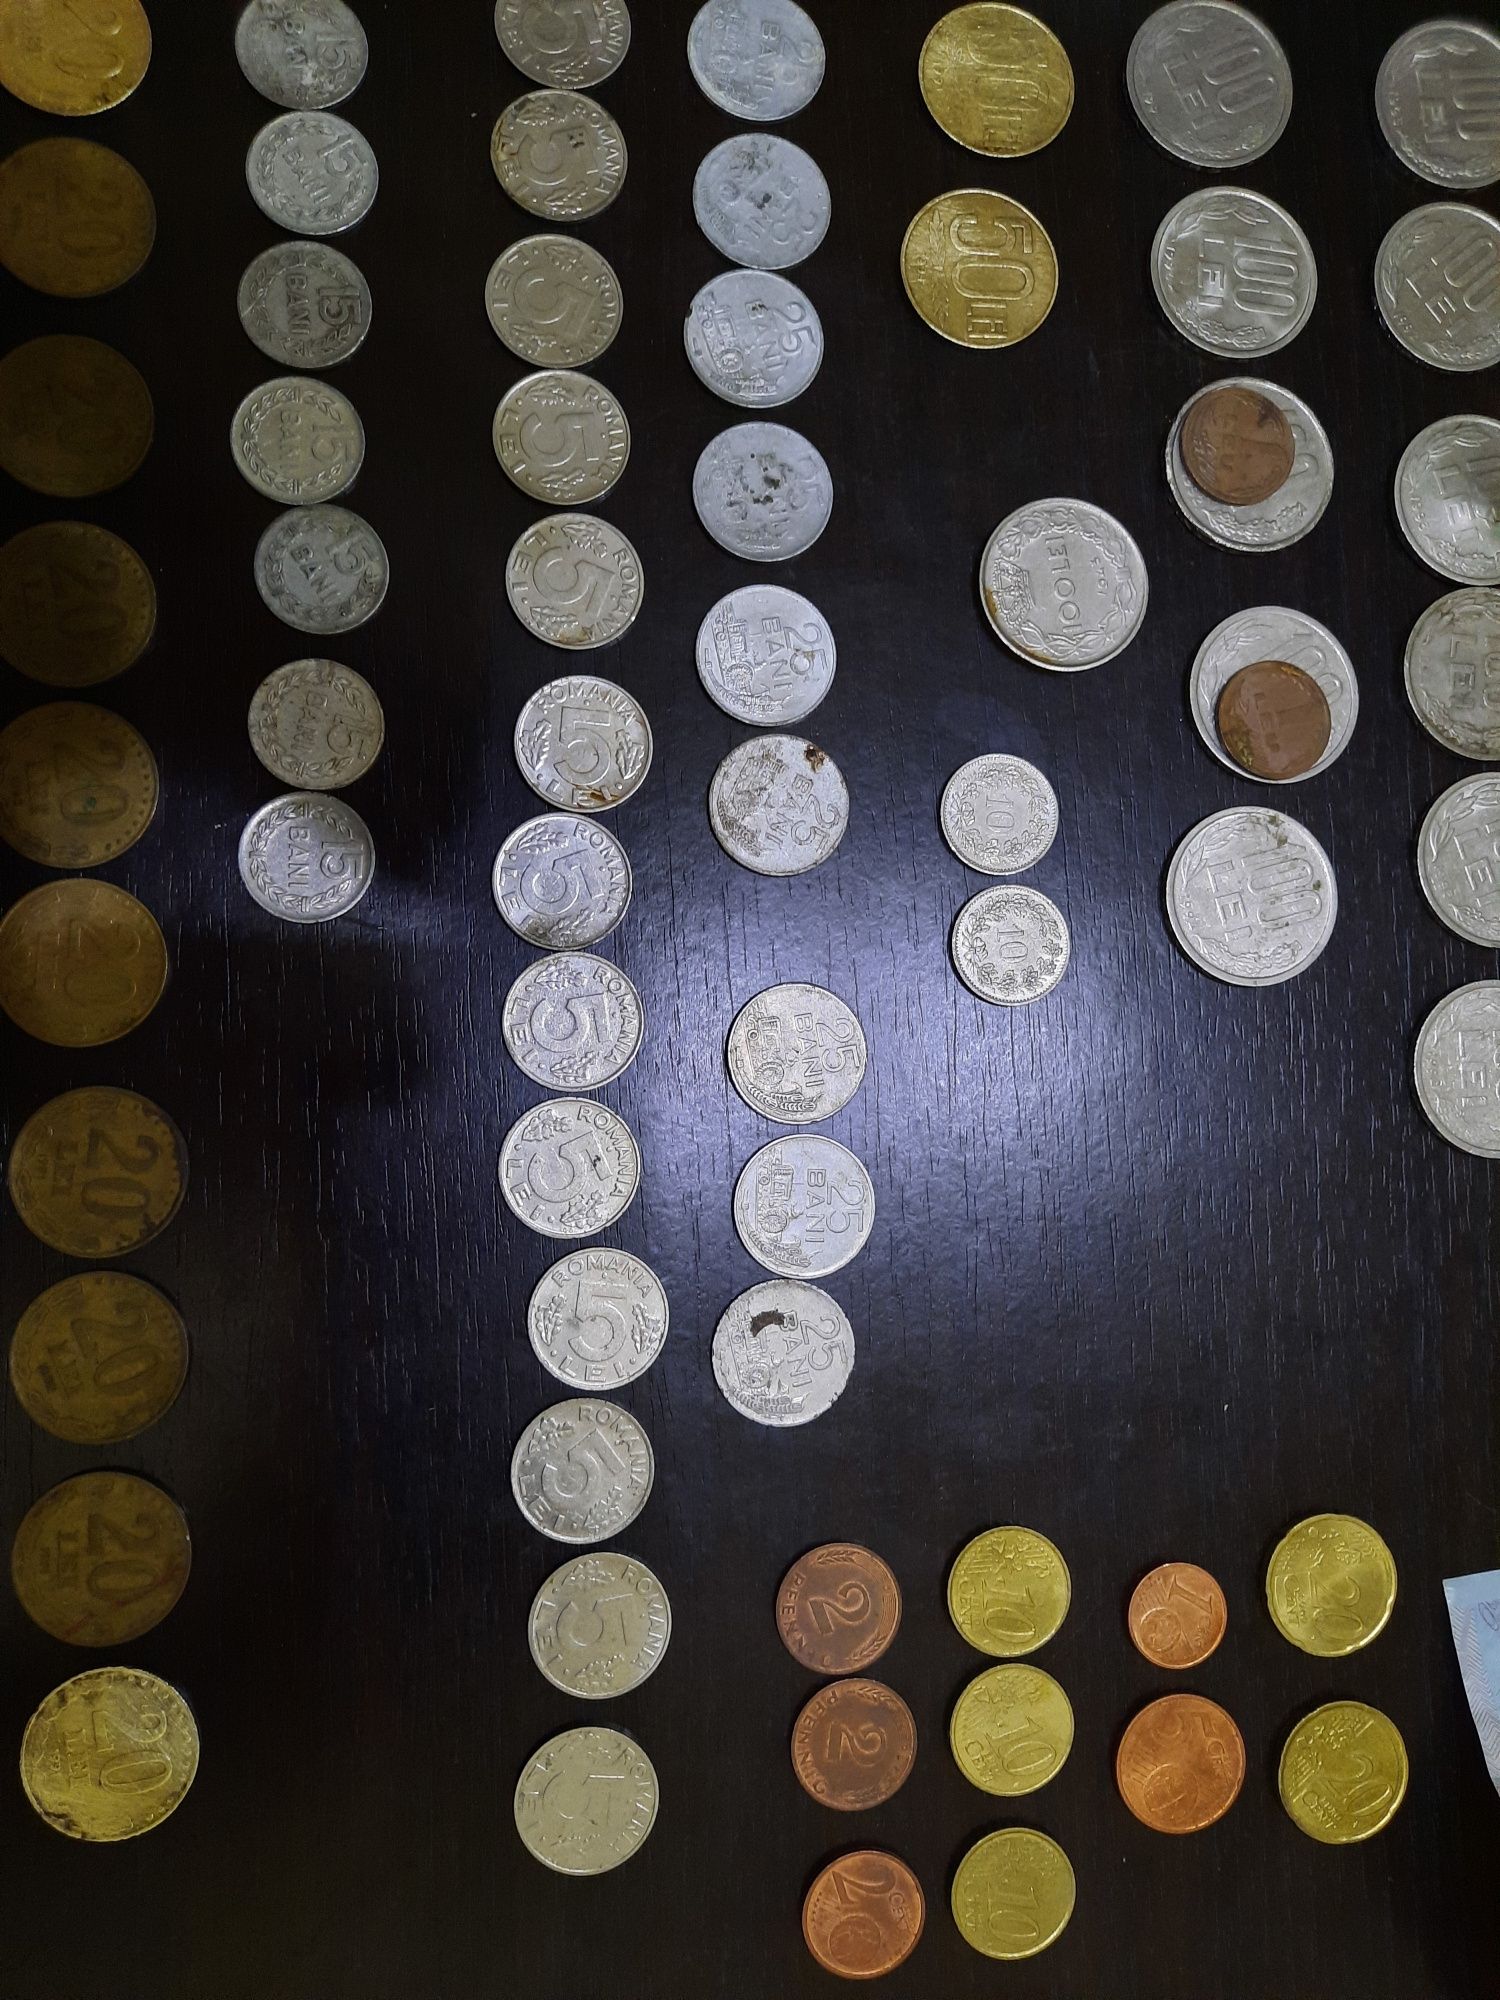 Monede romanesti vechi,Eurocenti, Lire,Bancnote/monede eclipsa, Forint